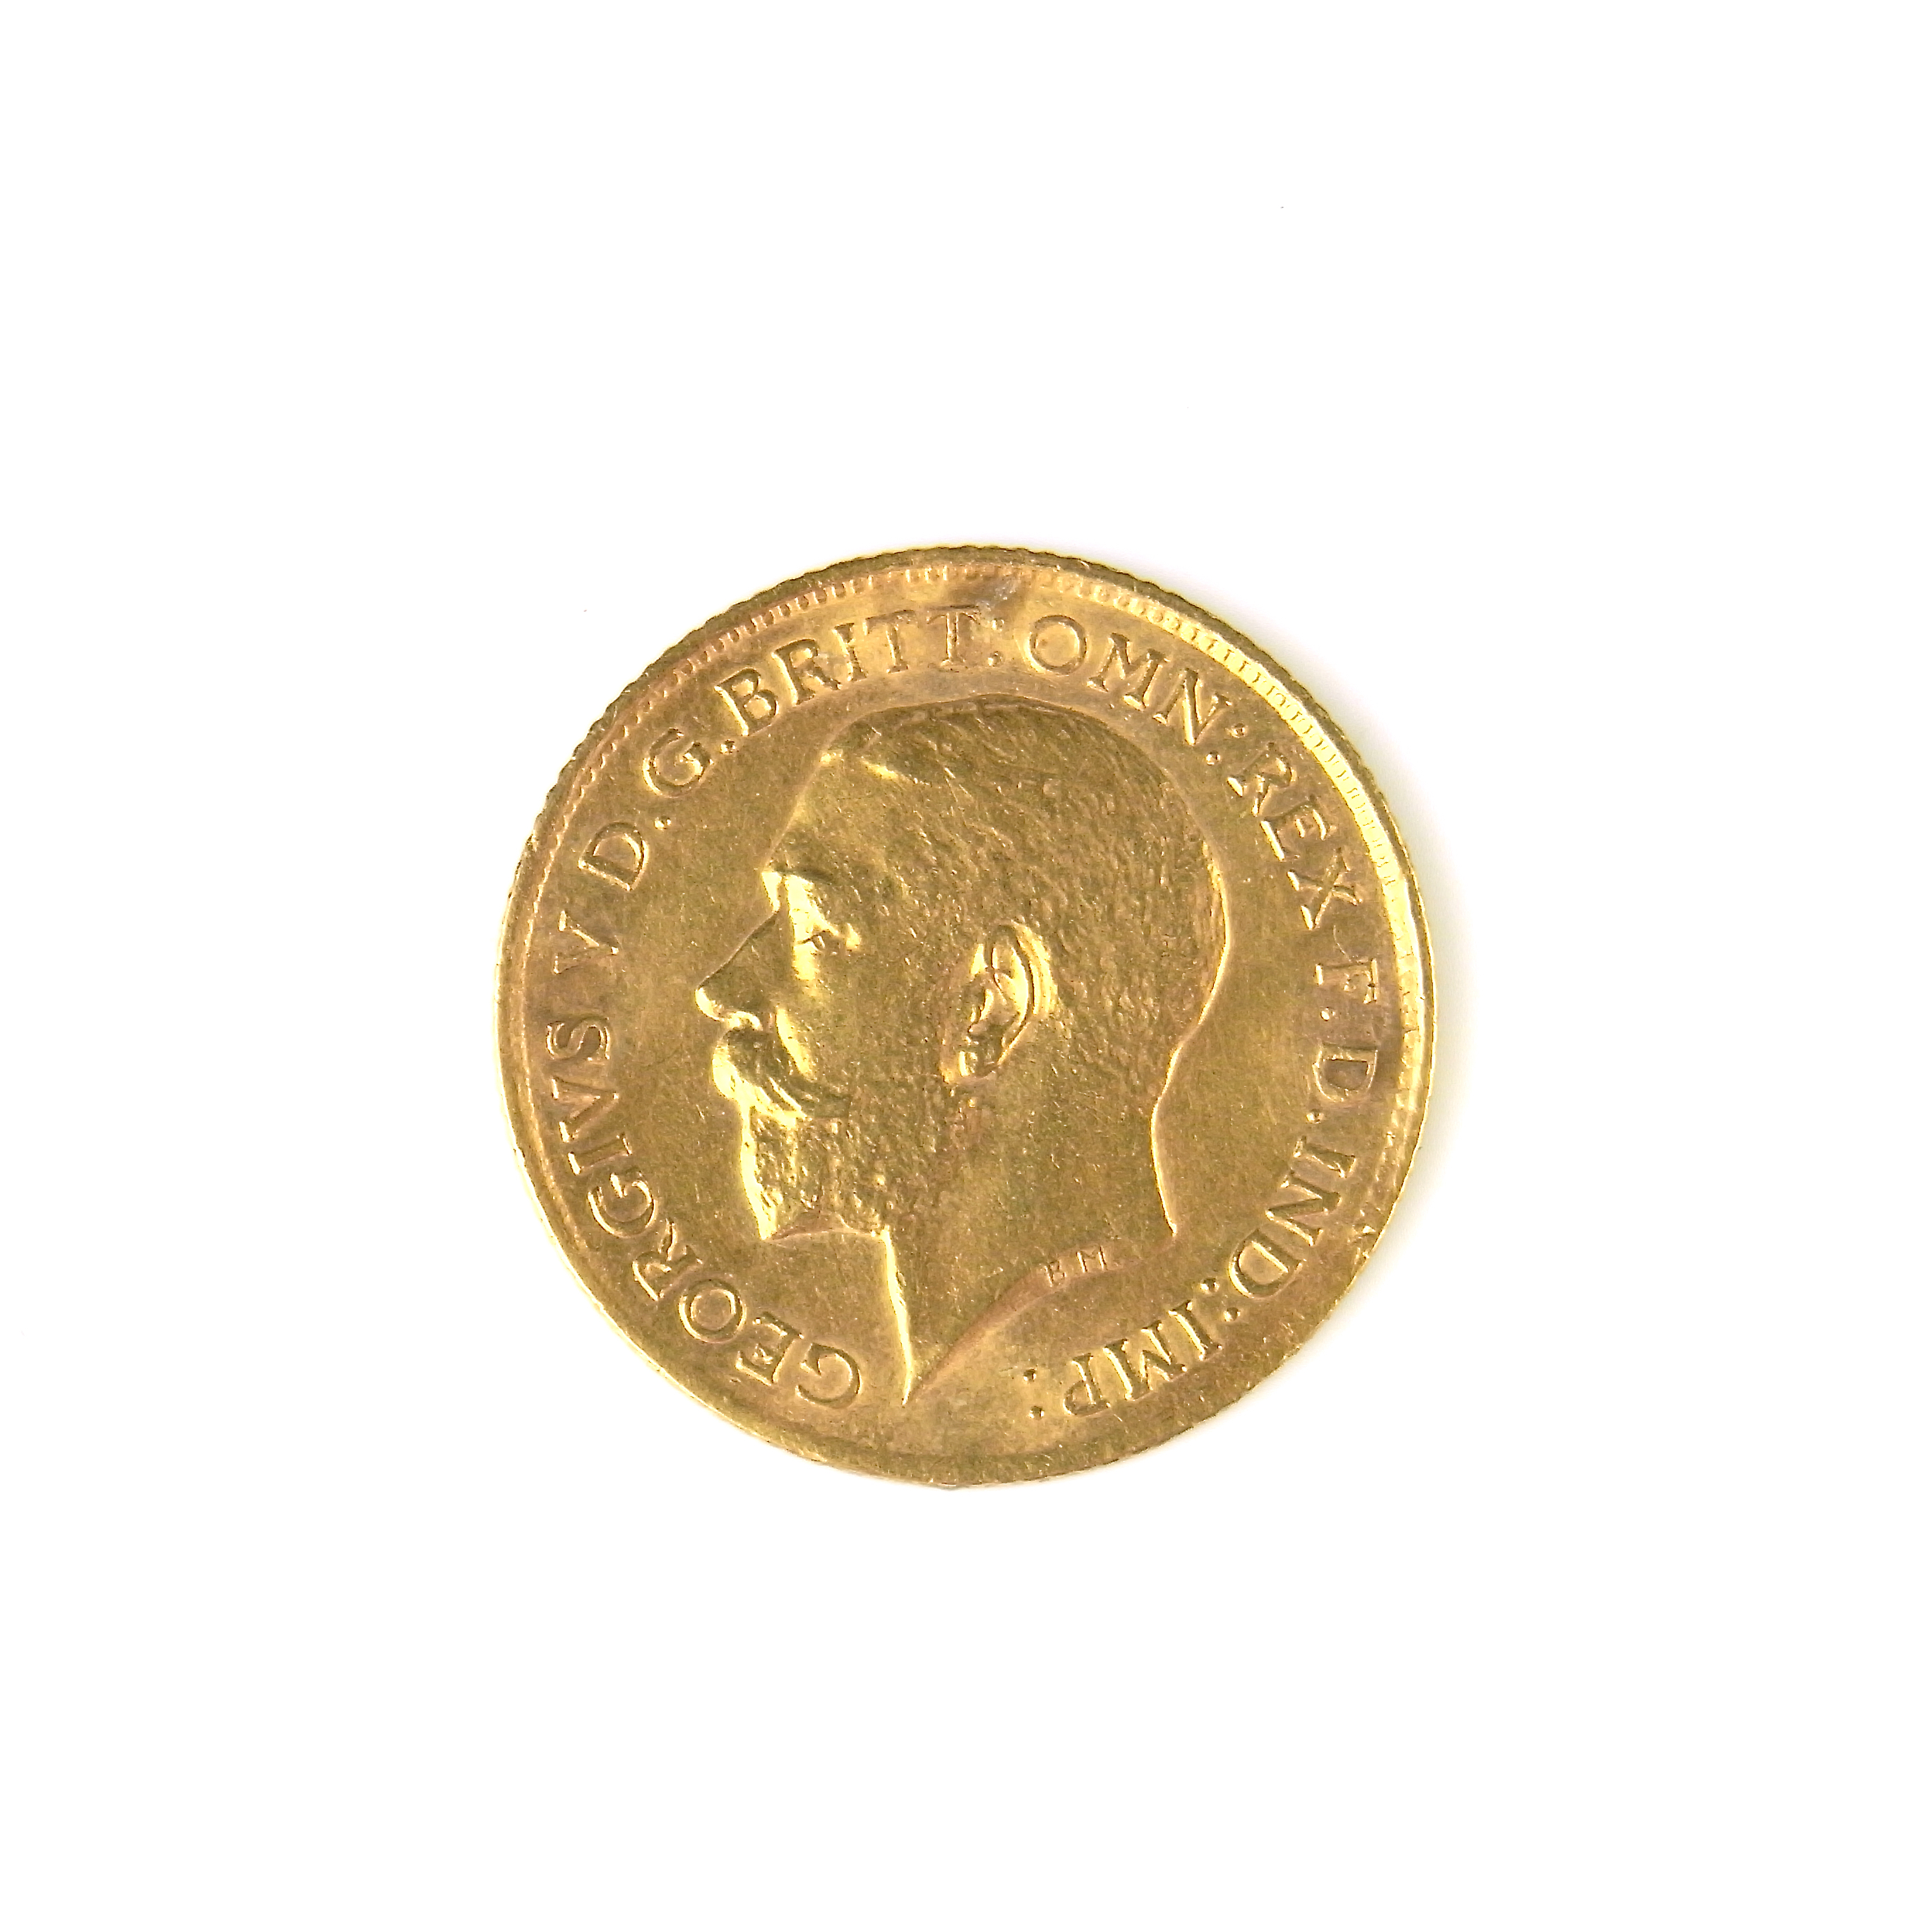 Gold half sovereign coin.